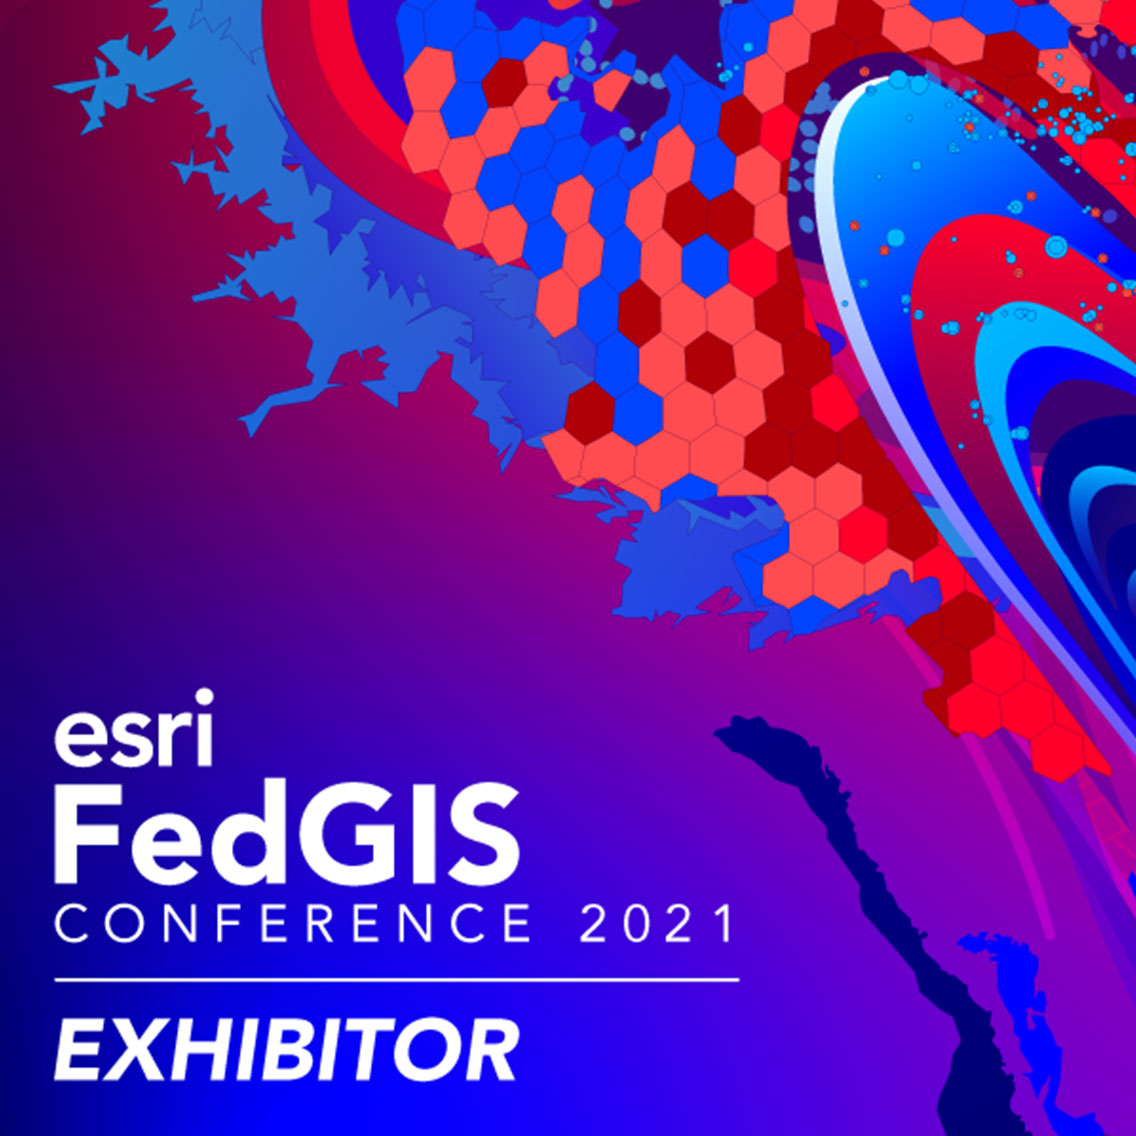 Preligens sponsor of FedGIS 2021